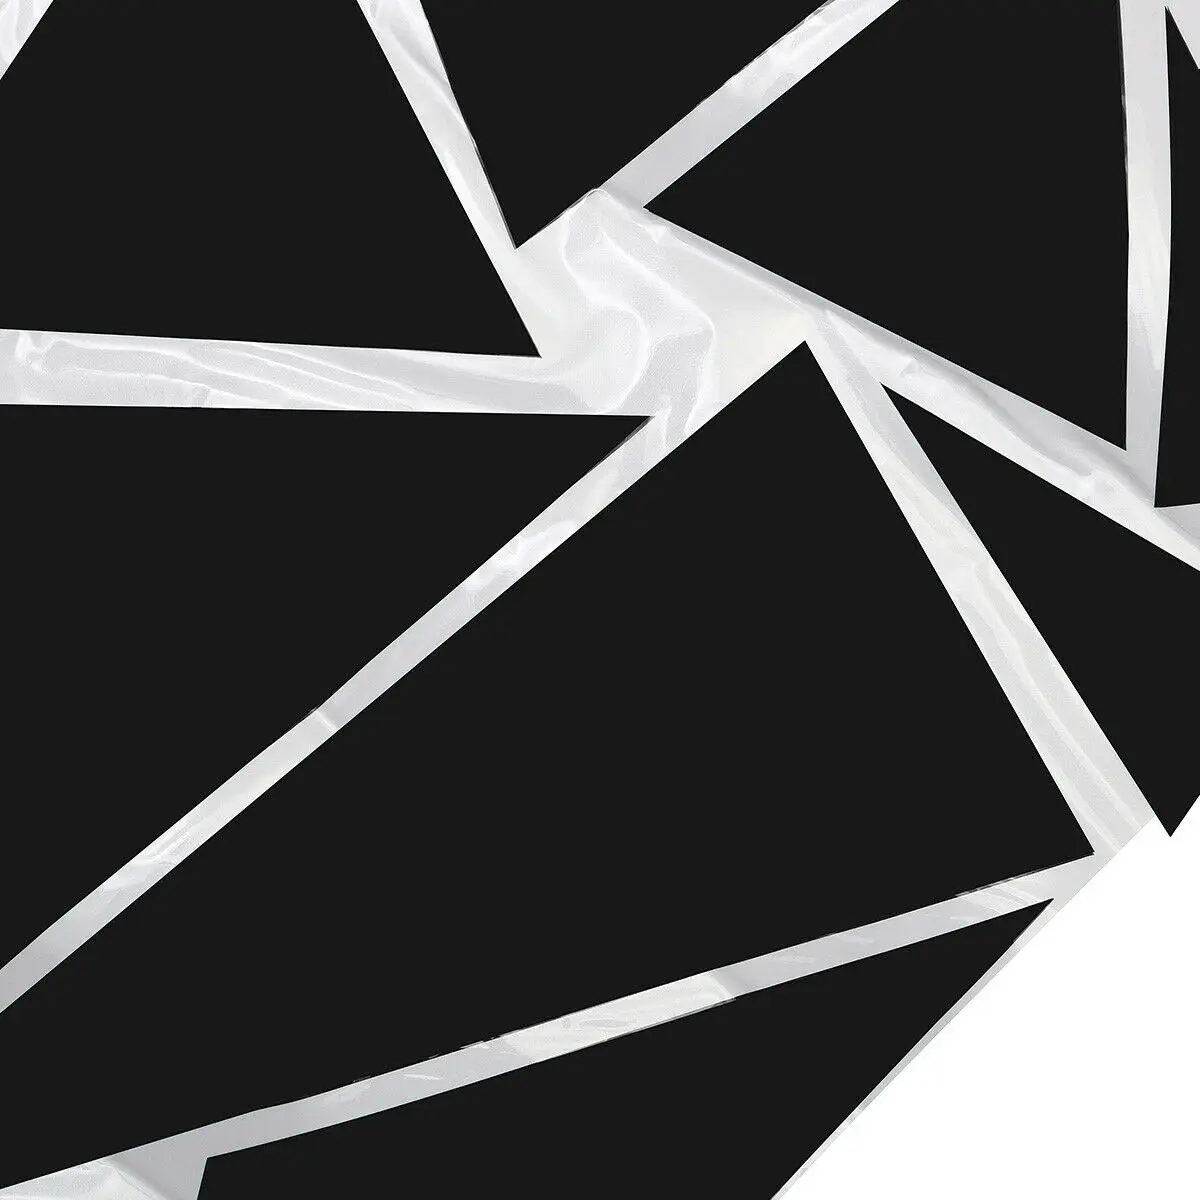  GRAFIC Autocollants latéraux de Voiture, Triangles Set Complet  de Camouflage pour Voiture Autocollant de Voiture Autocollant de Course  côté décoration Sport (Noir Satin)